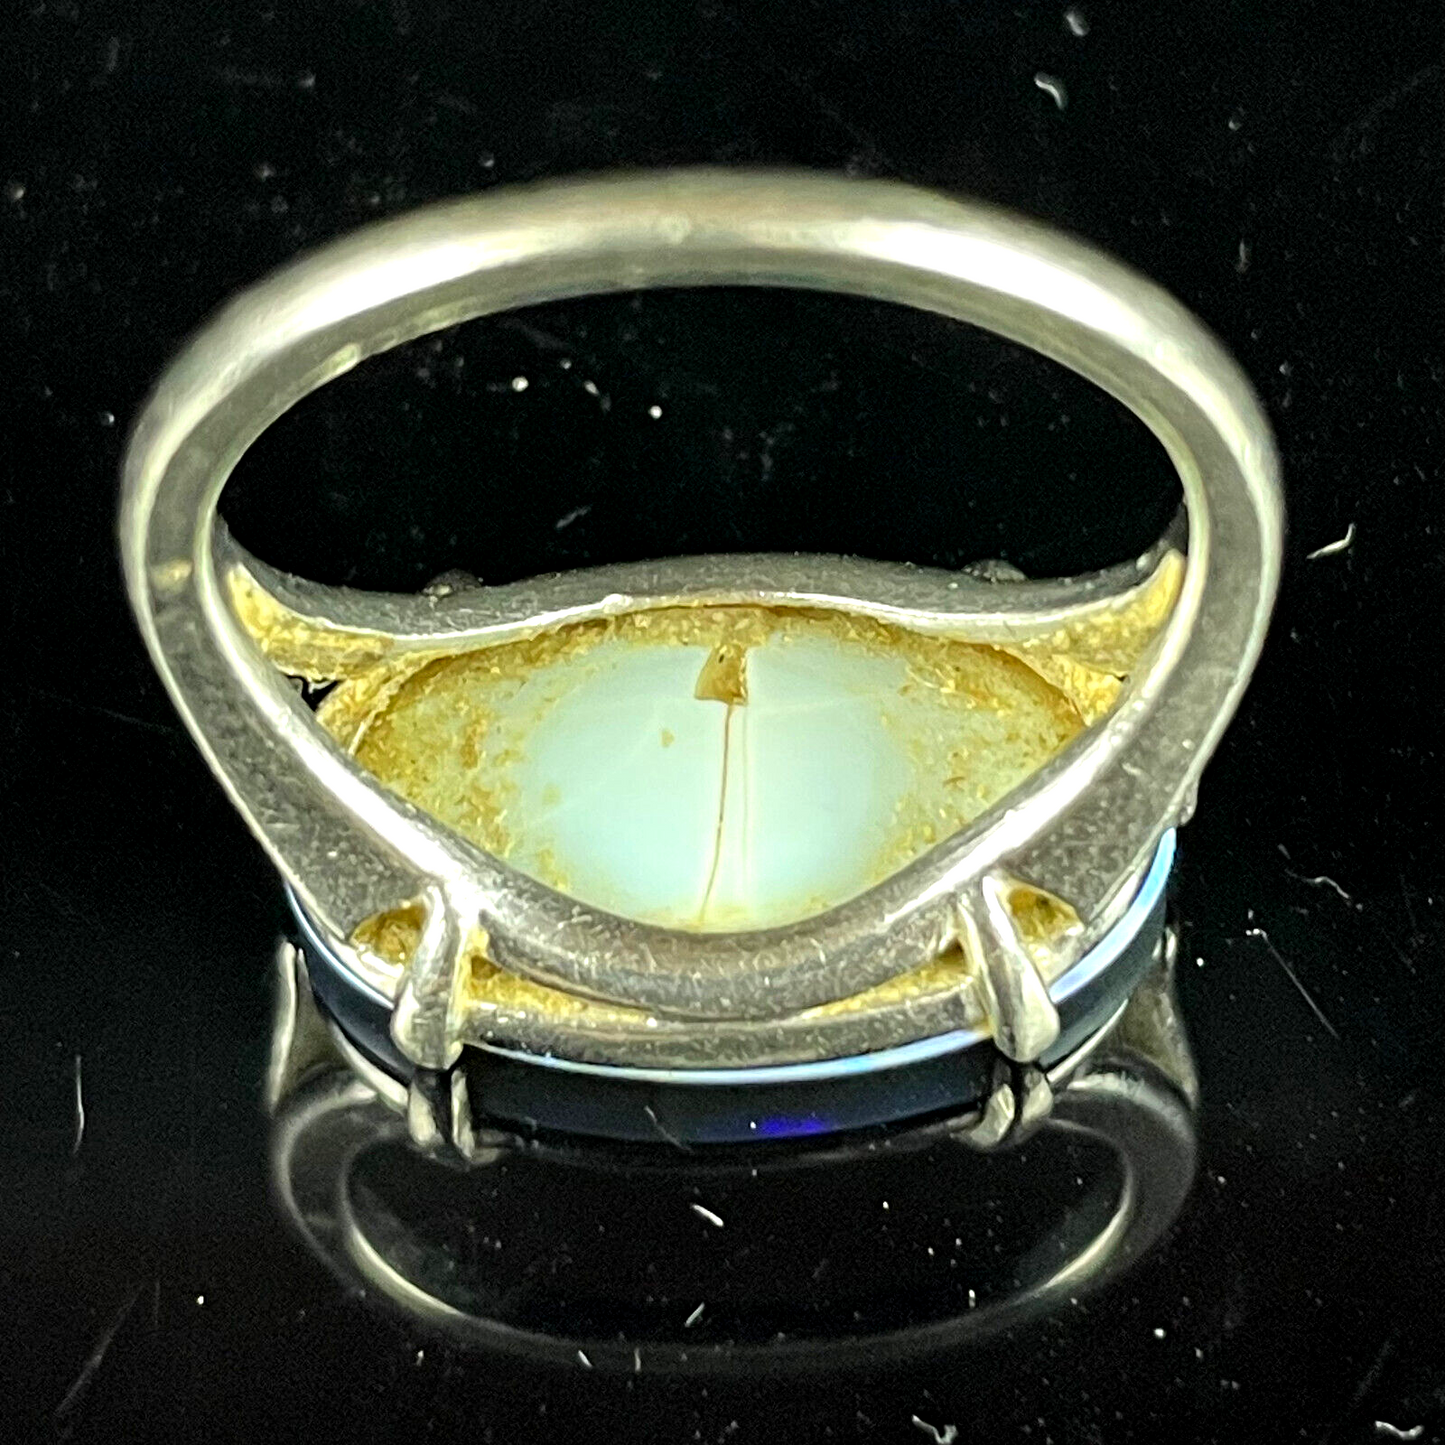 Rare 90% Platinum 10% Iridium Unique Art Deco Flat Oval Opal Ring